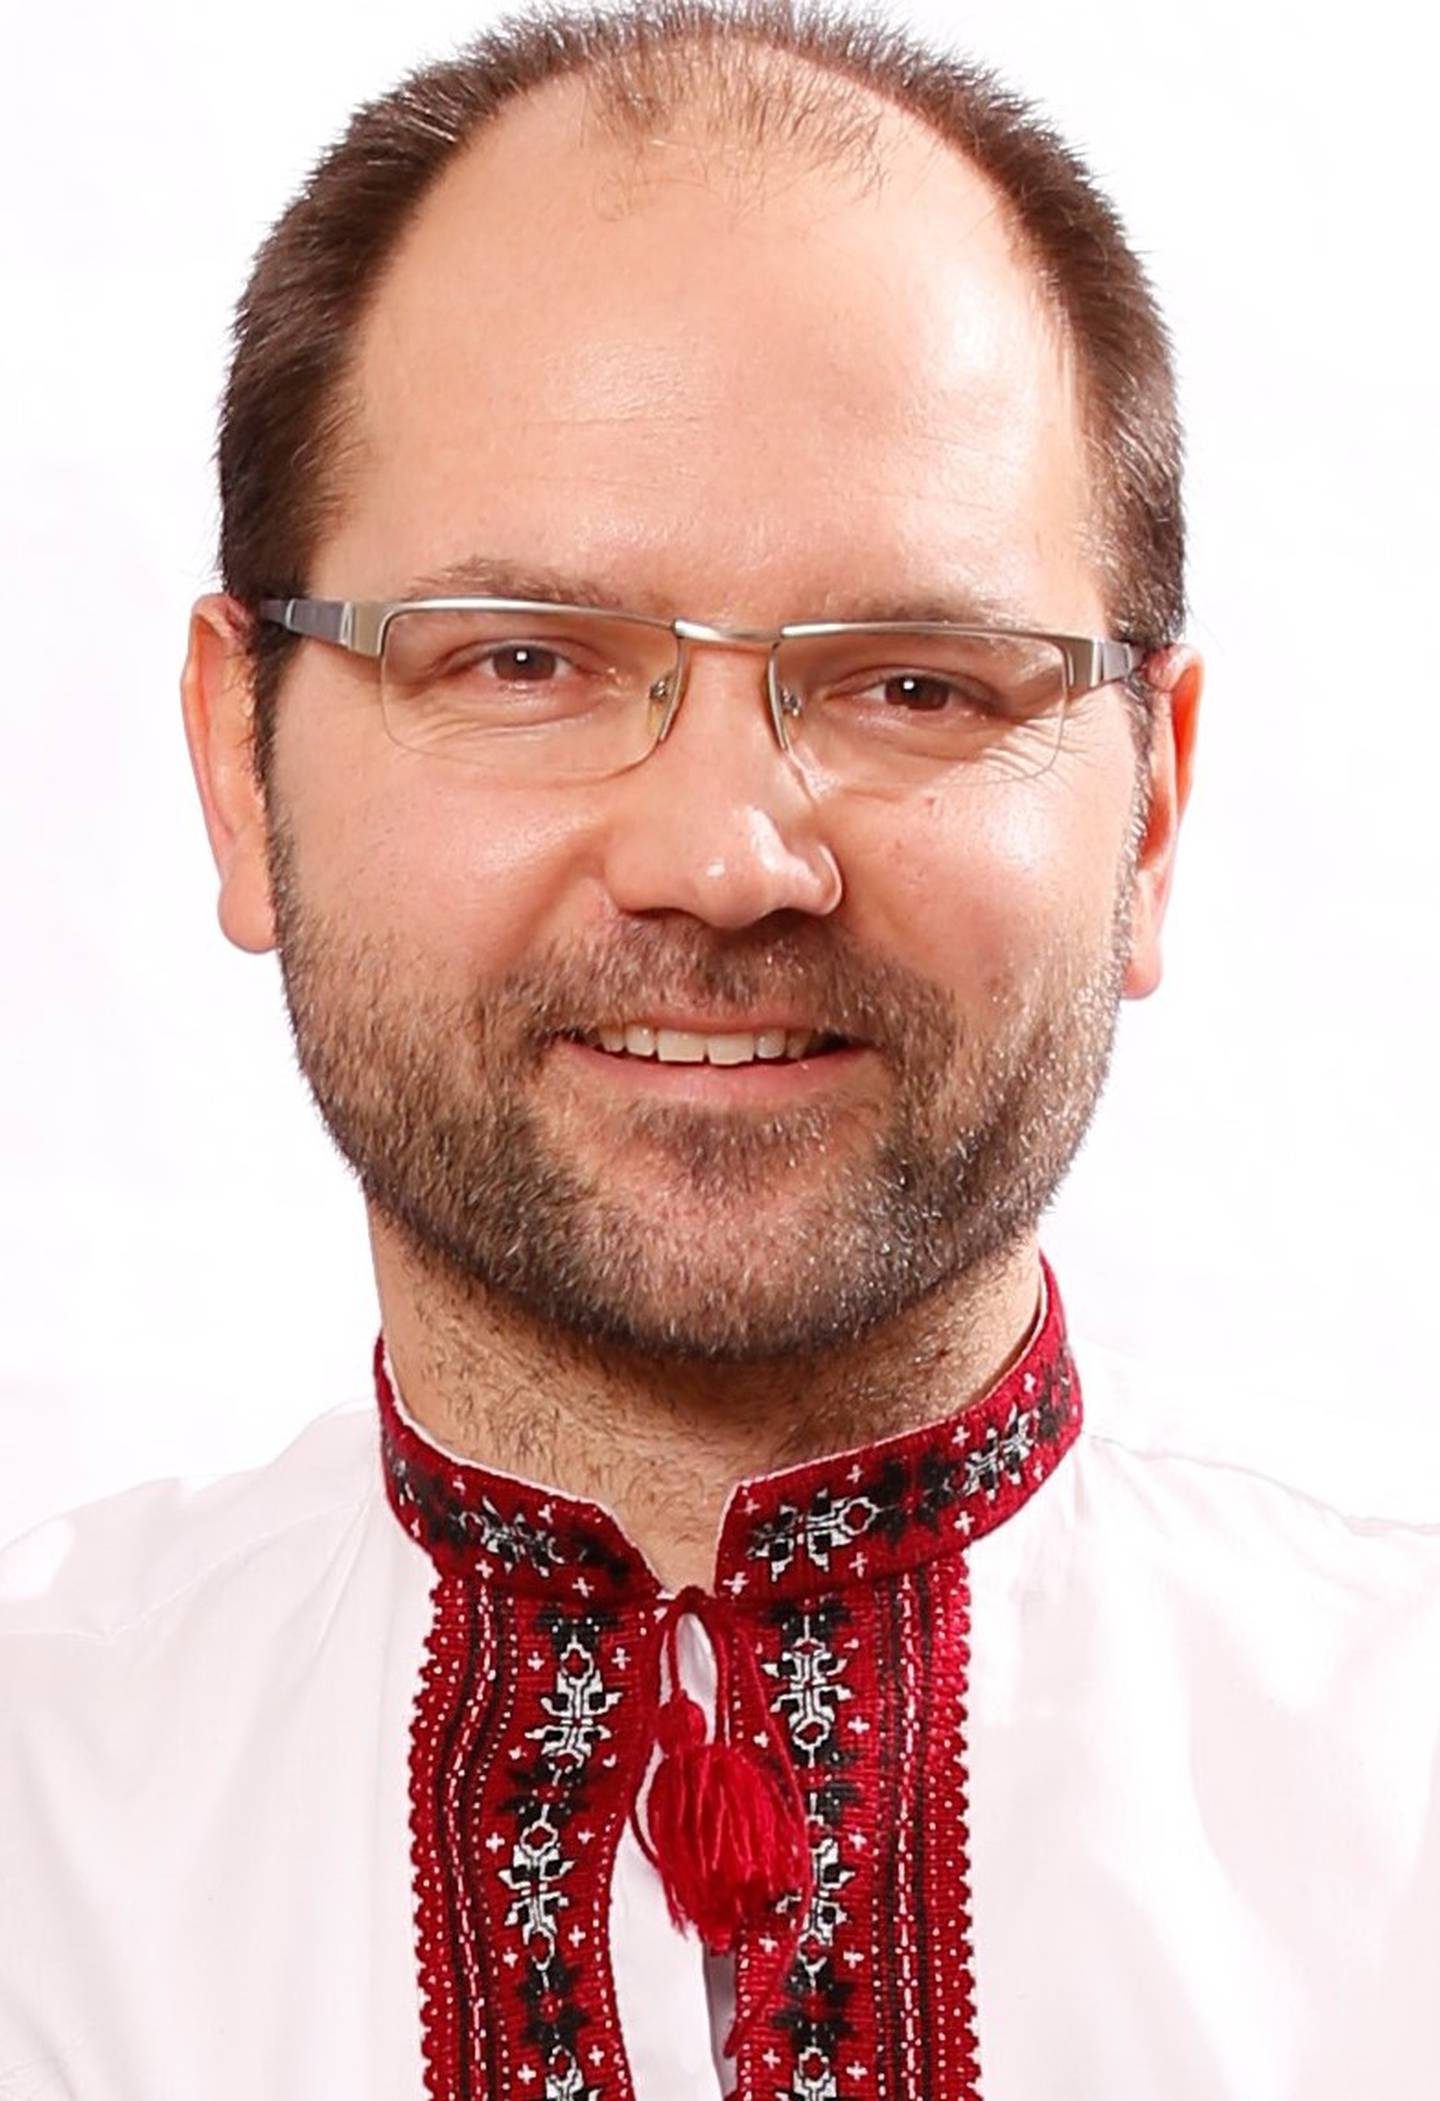 Ukraina-viter Alexander Tymczuk (46) feirer jul to ganger. – 24 desember spiser vi ribbe. Men hver 6. januar kler vi oss i våre ukrainske broderte skjorter og bluser, og samles for å nyte ukrainske kålruletter, sier han.